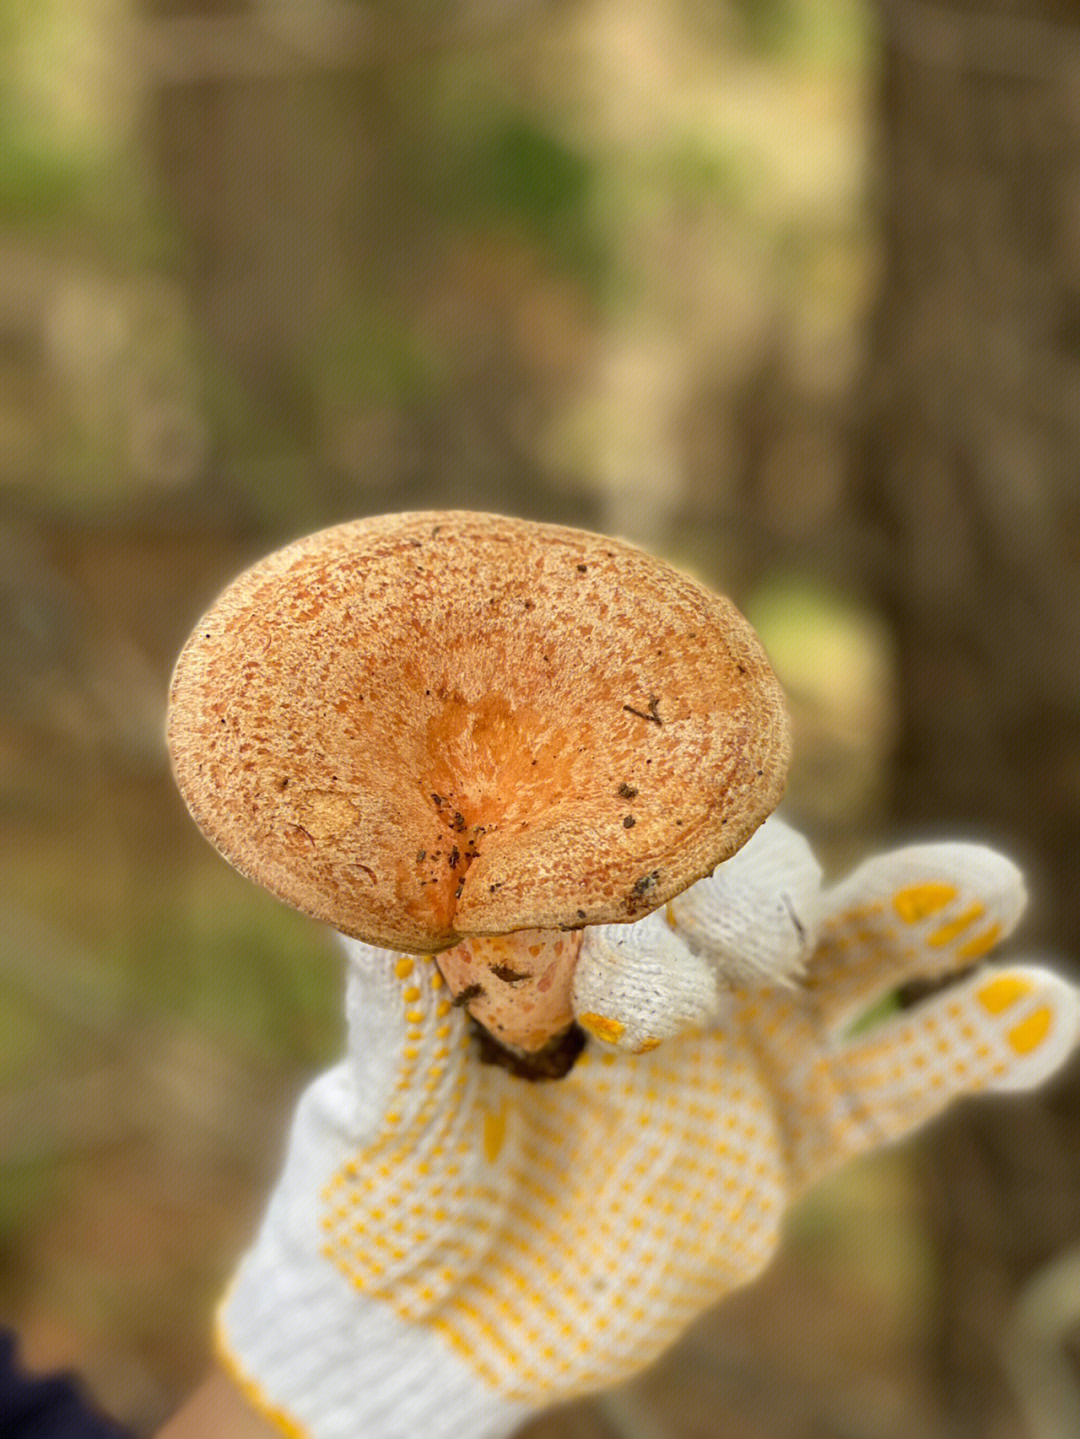 松菌,重阳菌等,生长在松树下的酸性土,是乳菇属中最常见的大型蘑菇之